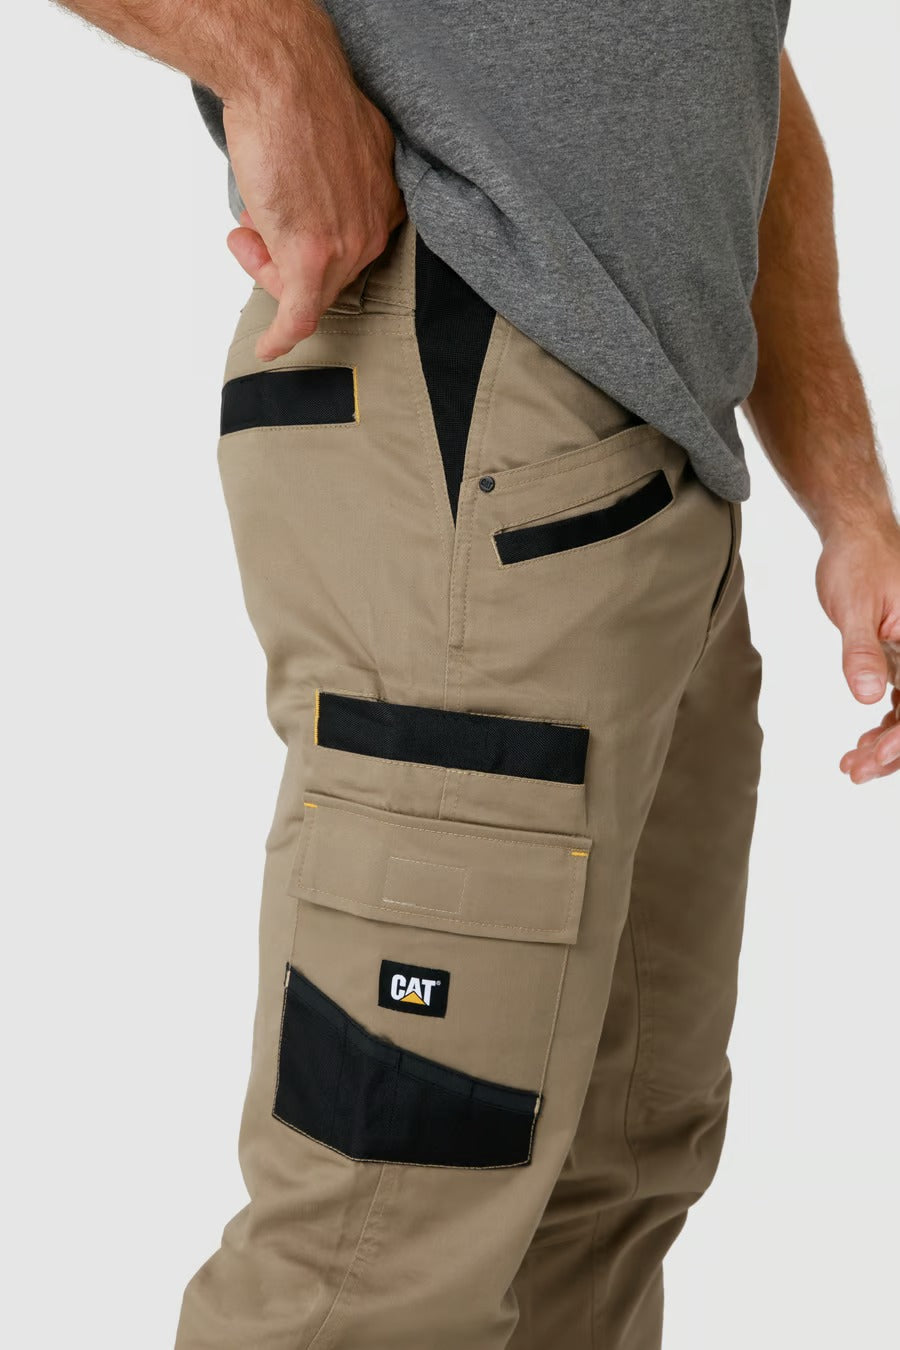 CAT Apparel Pants: Men's 1810008 10109 Water-Resistant Black/Graphite H2O  Defender Pants